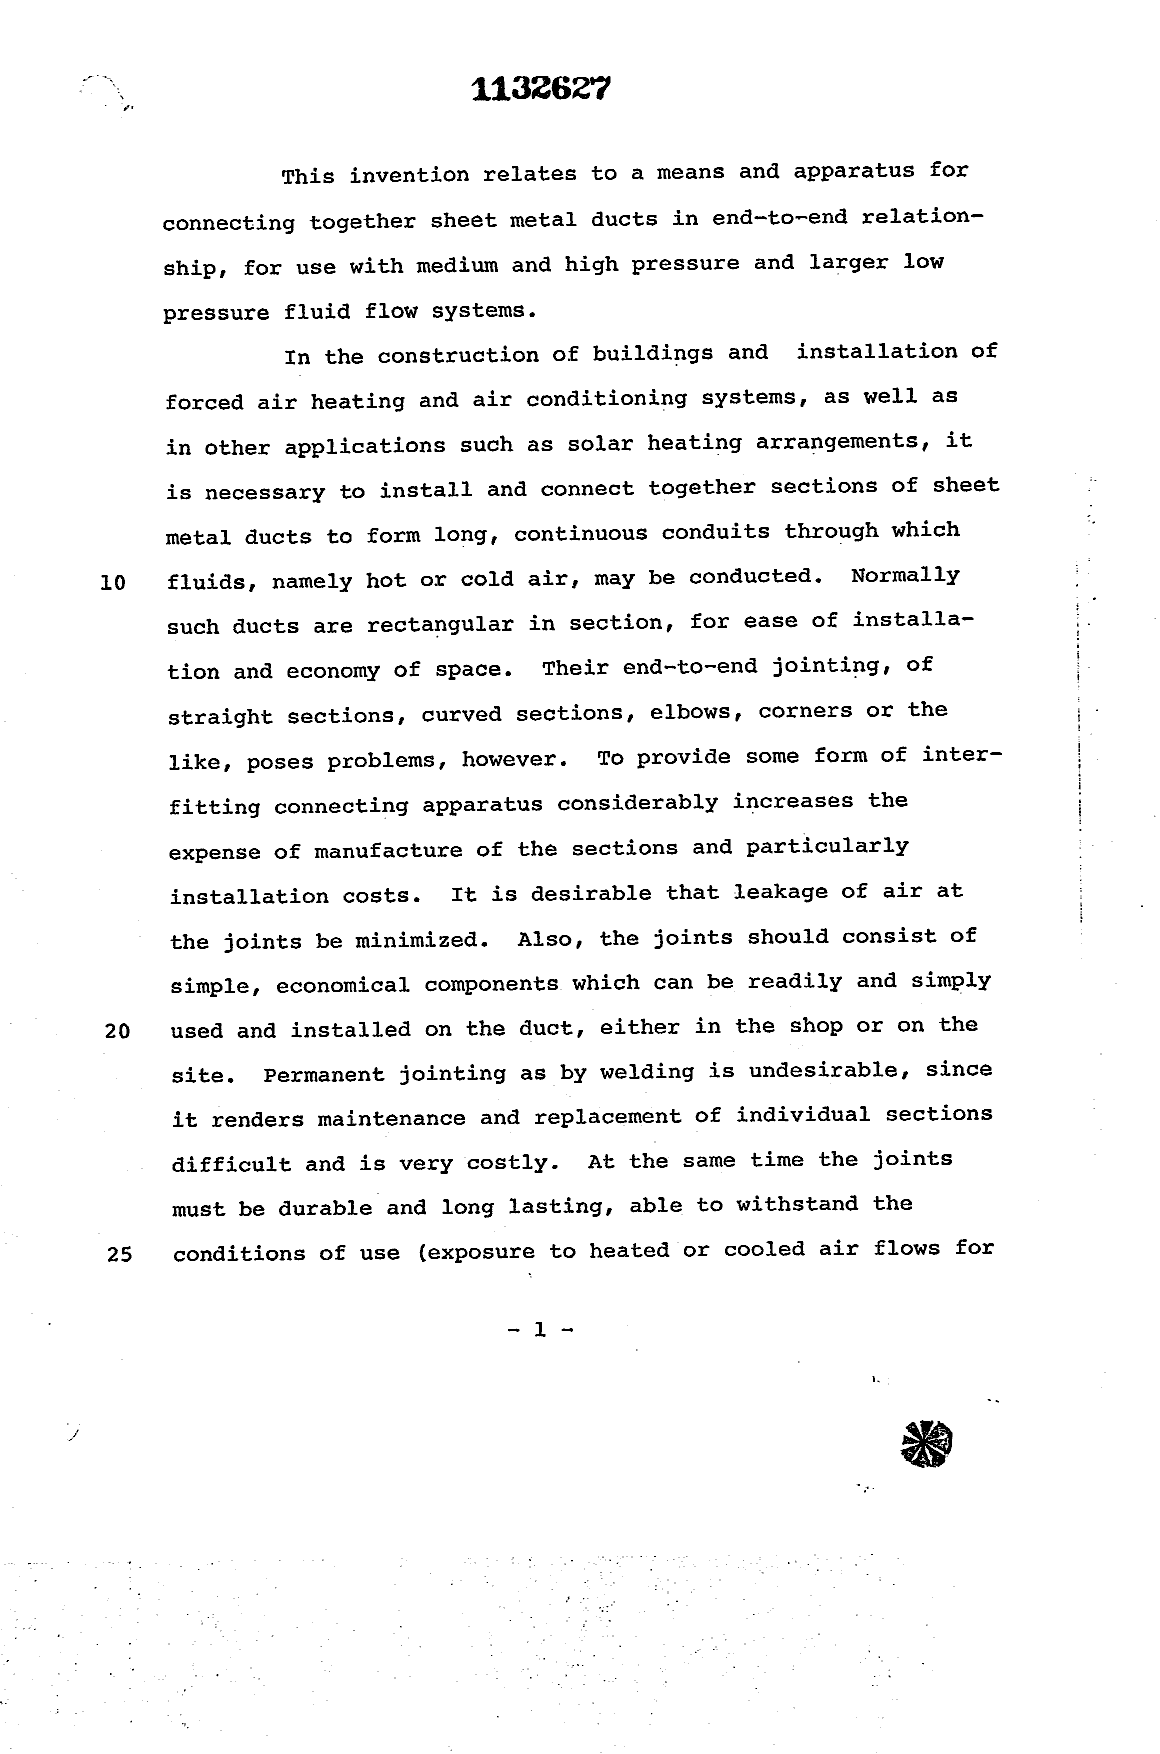 Canadian Patent Document 1132627. Description 19940225. Image 1 of 13